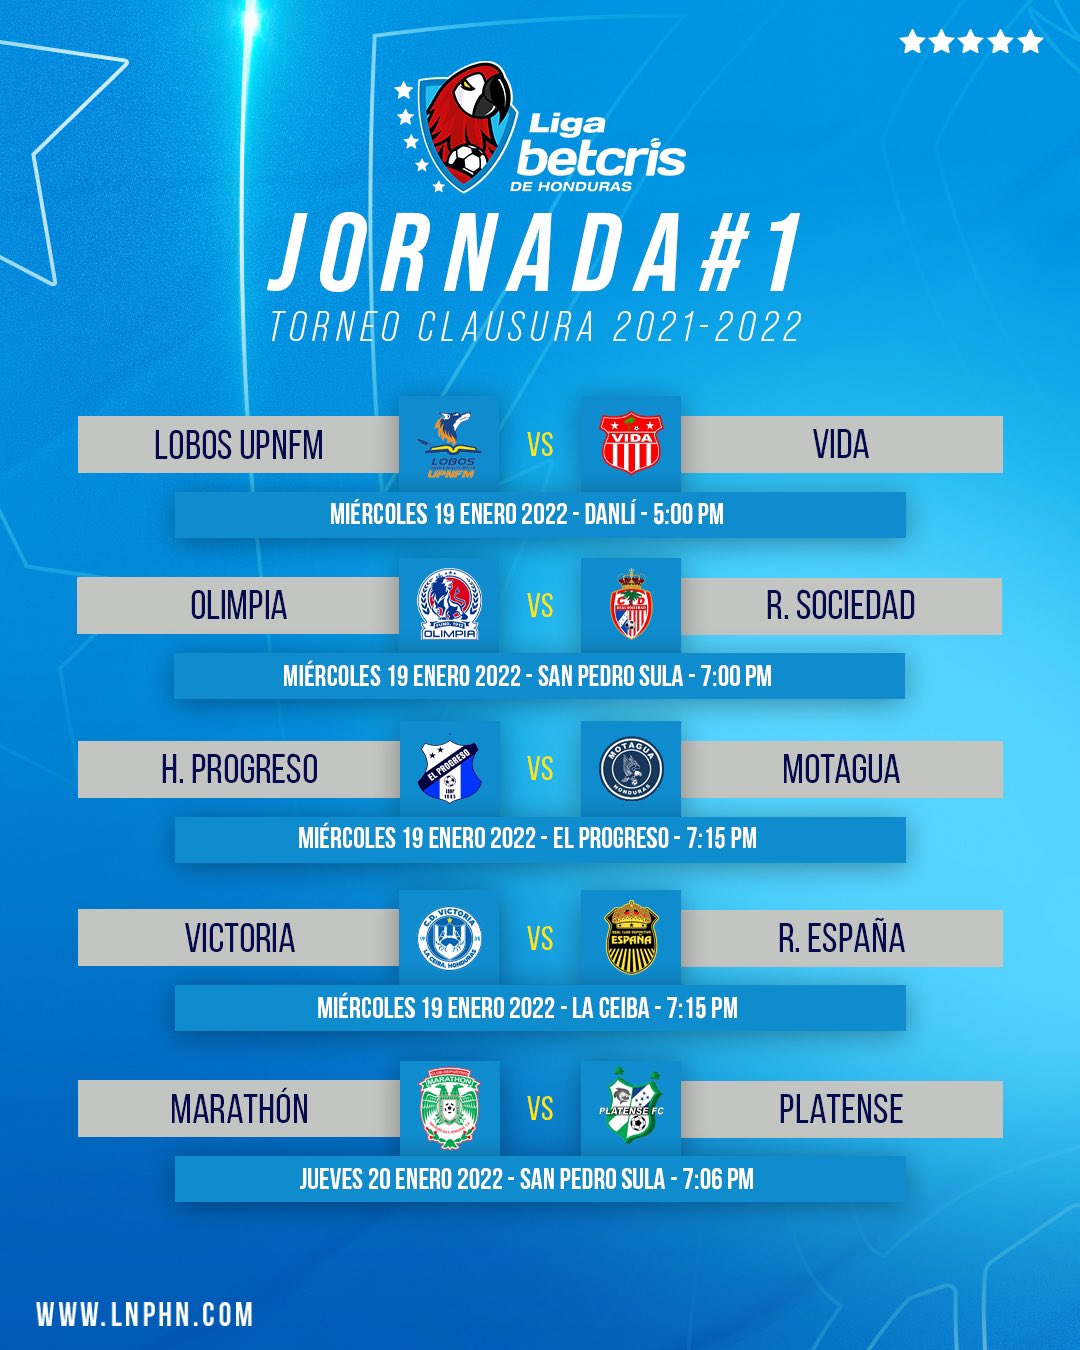 Liga Betcris de Honduras Twitter: "¡JORNADA 1!⚽🔥 Los juegos de la del #TorneoClausura 2021-2022 de la #LigaBetcrisHonduras con los horarios oficiales. #LigaBetcrisHonduras #SomosBetcris https://t.co/YQuiMsnjsH" / Twitter